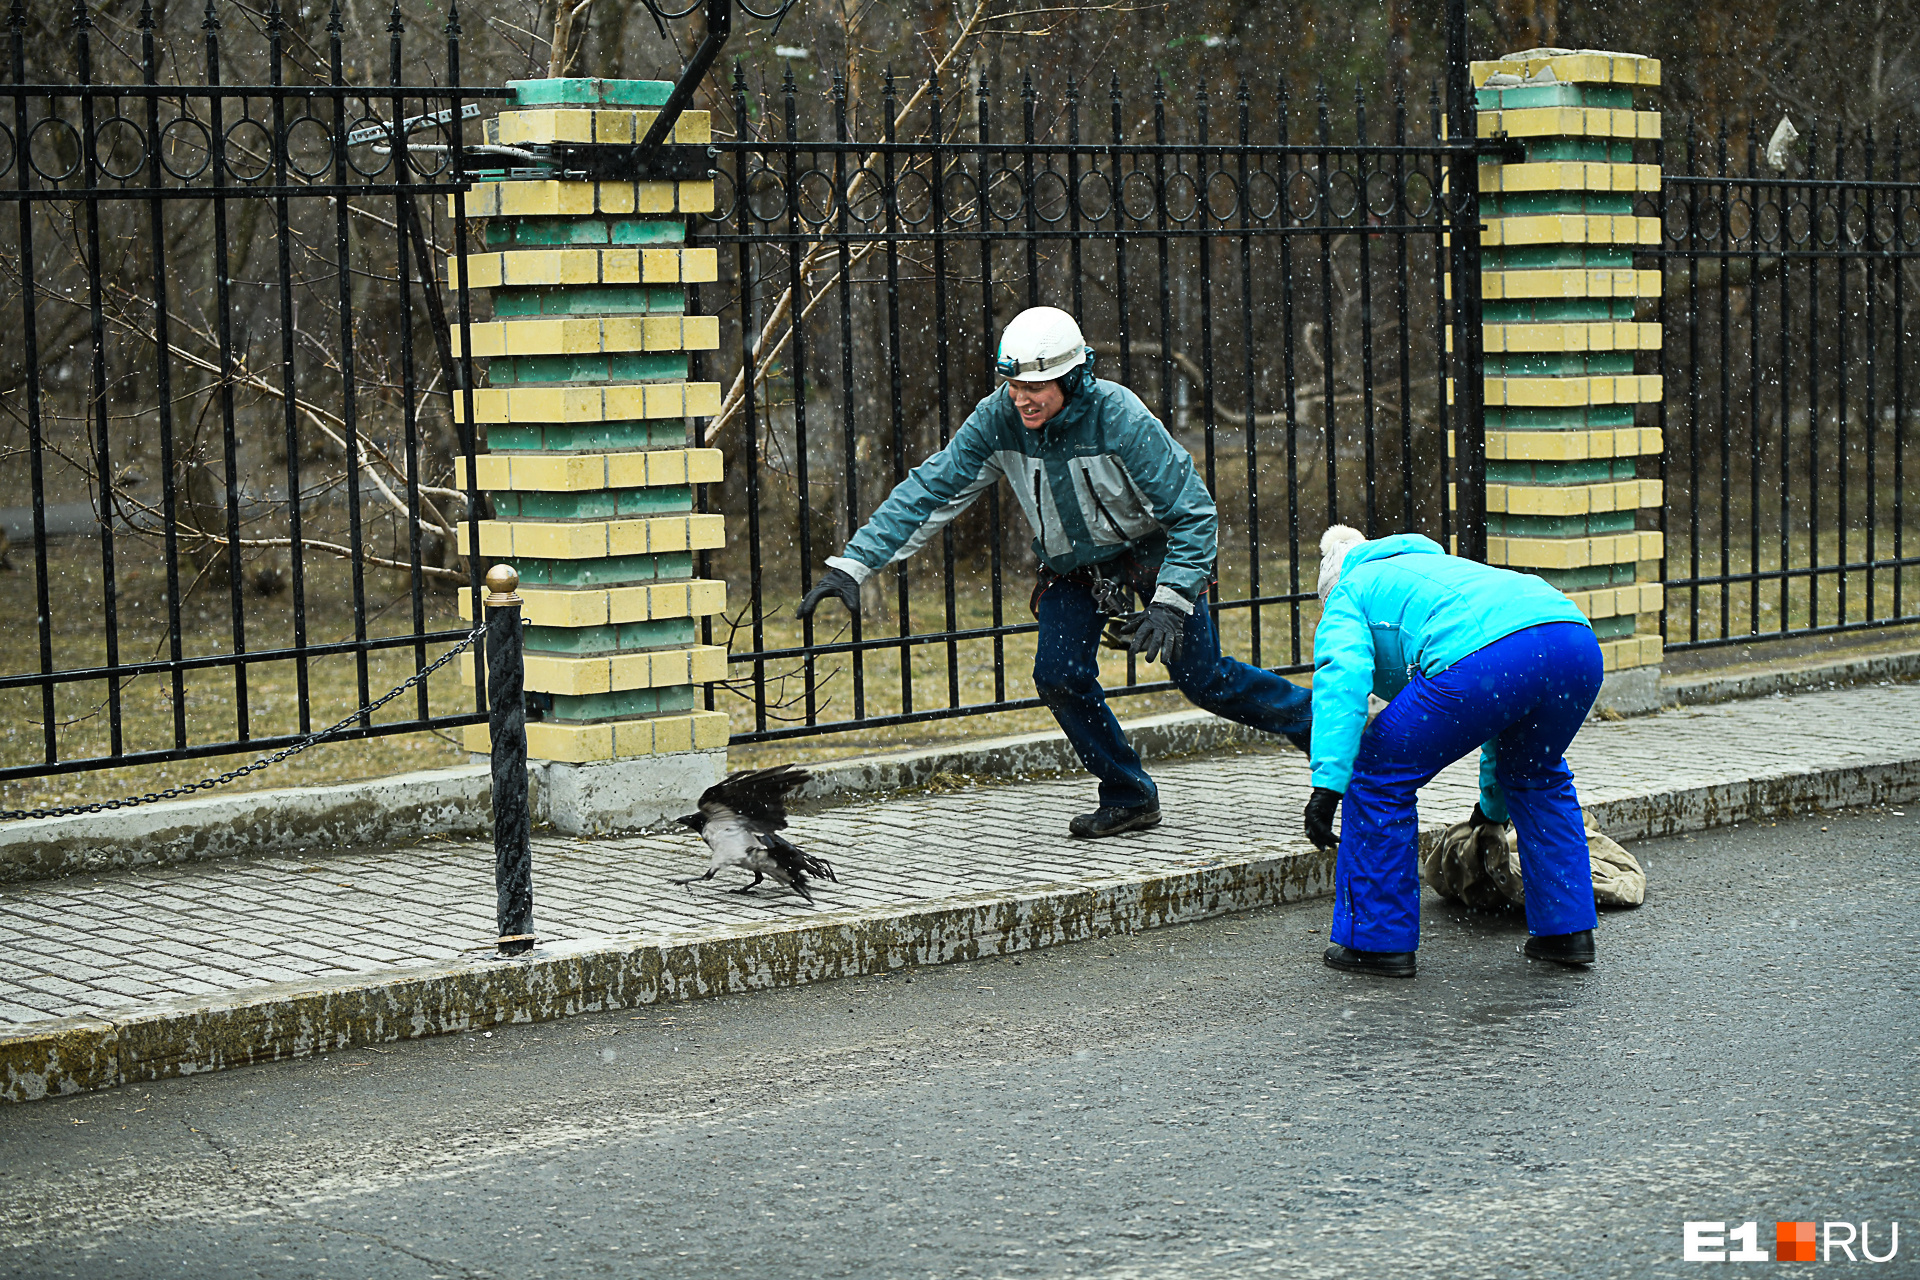 Птицы застряли в заборе. Перелазит забор. Спасение вороны Екатеринбург. Лиса лезет через забор. Видео ограждений